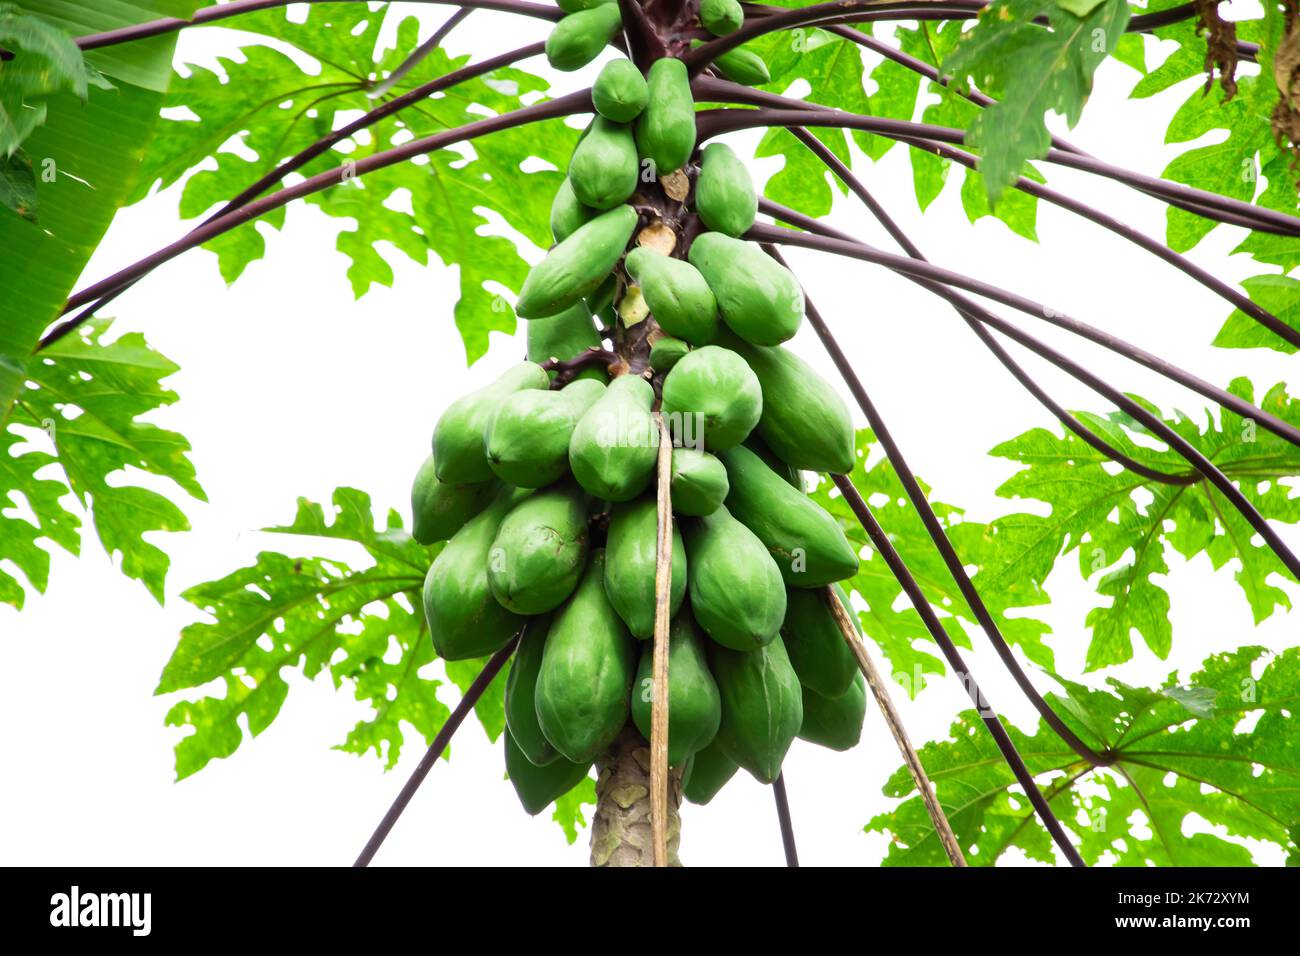 Closeup Image Of Natural Fresh Green Papaya Fruits On Tree Stock Photo